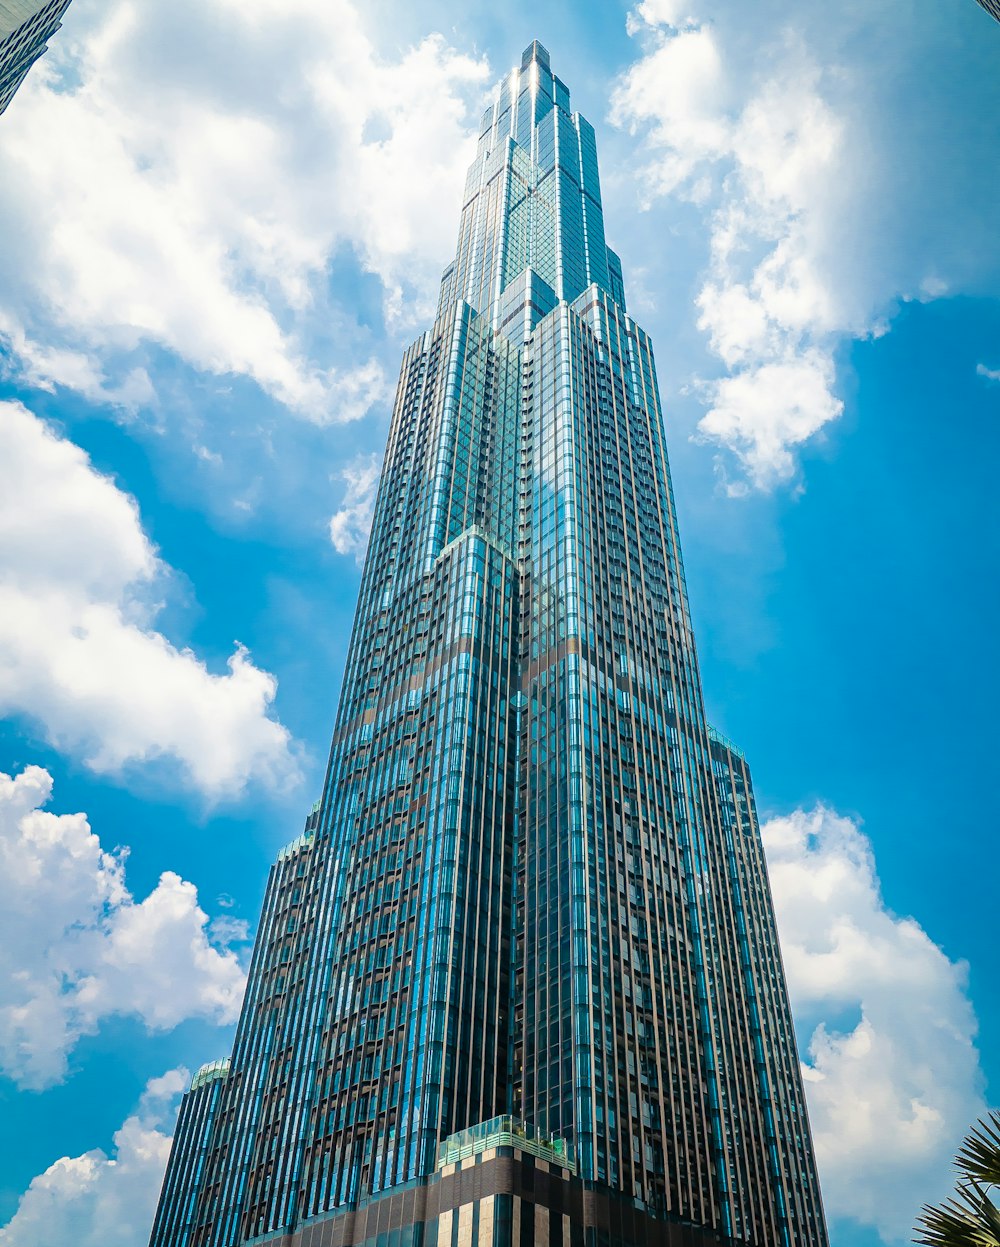 fotografia ad angolo basso di grattacieli sotto il cielo blu durante il giorno